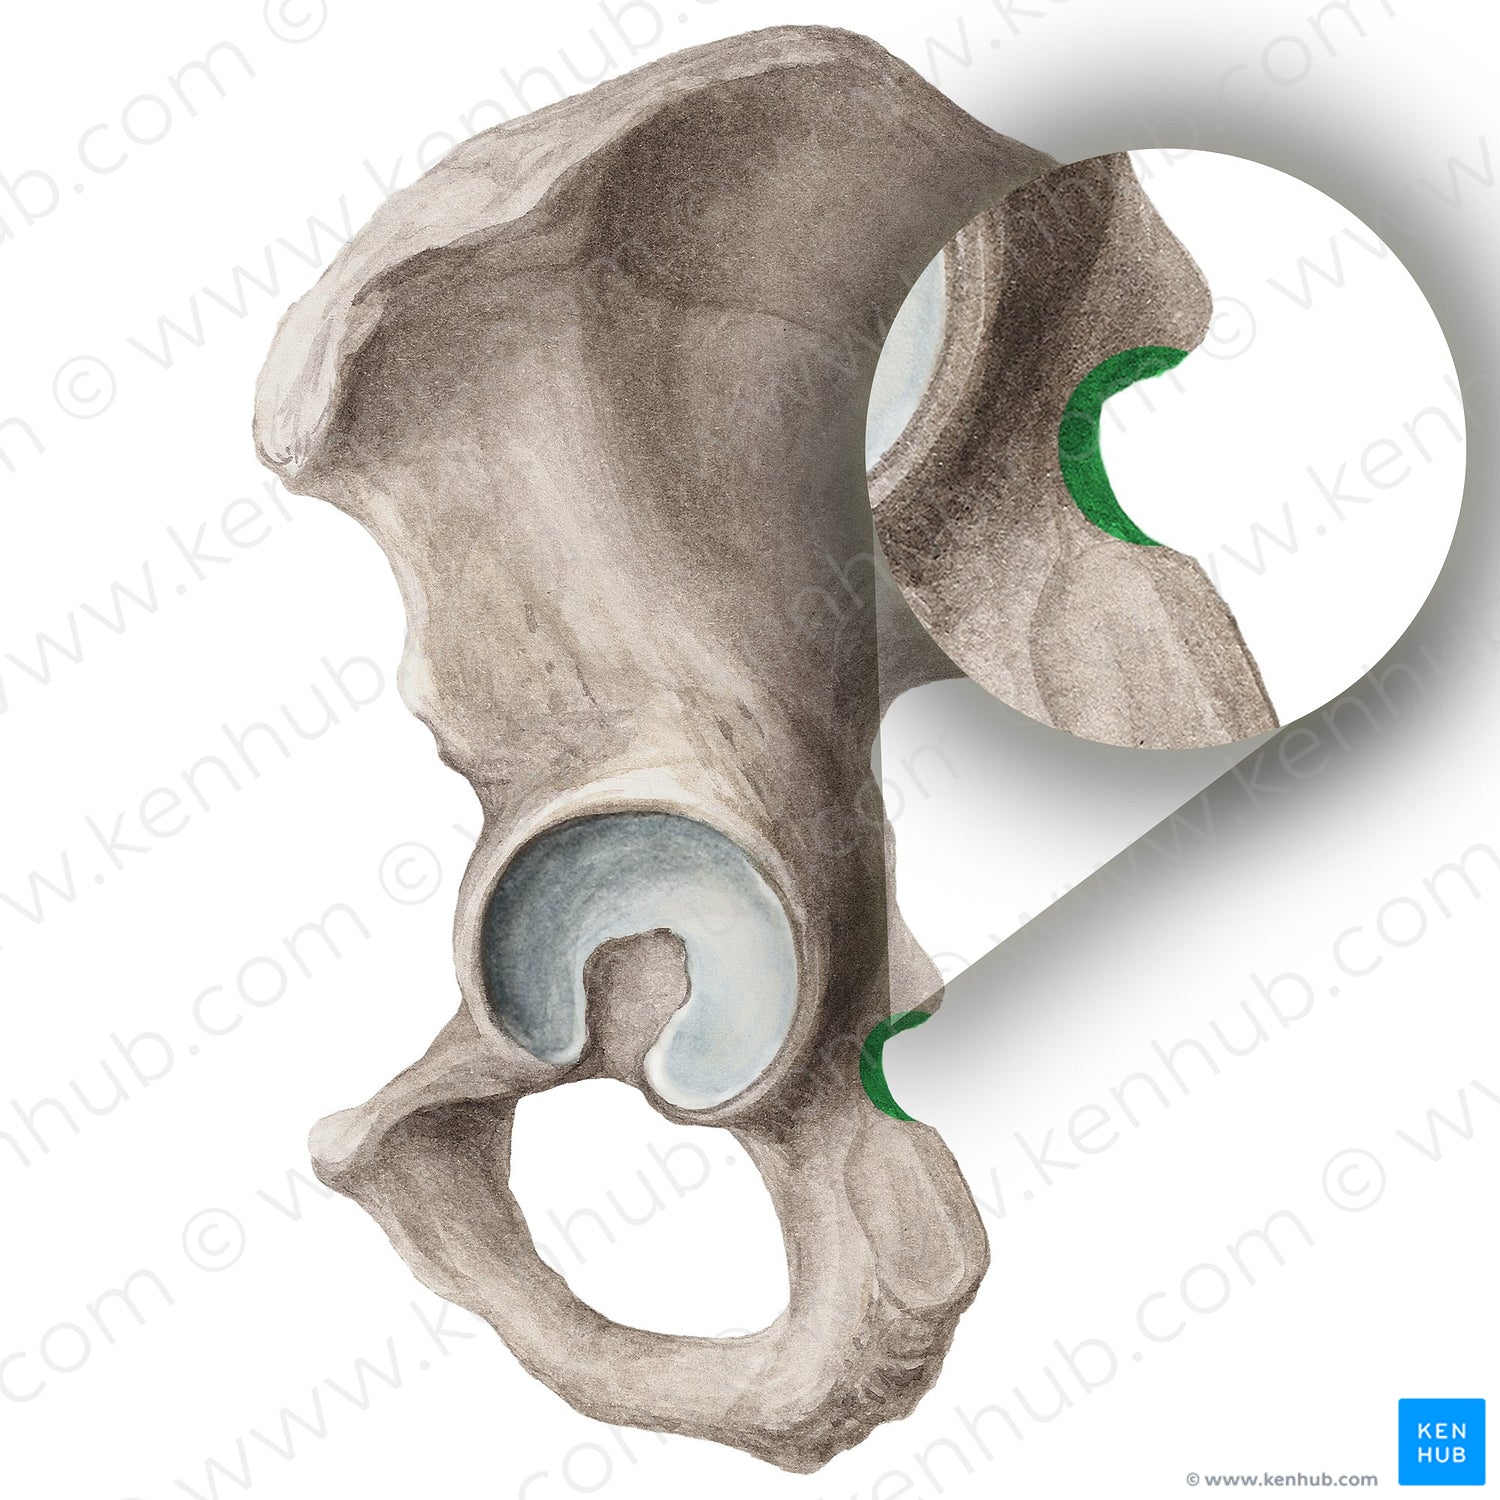 Lesser sciatic notch of hip bone (#4294)